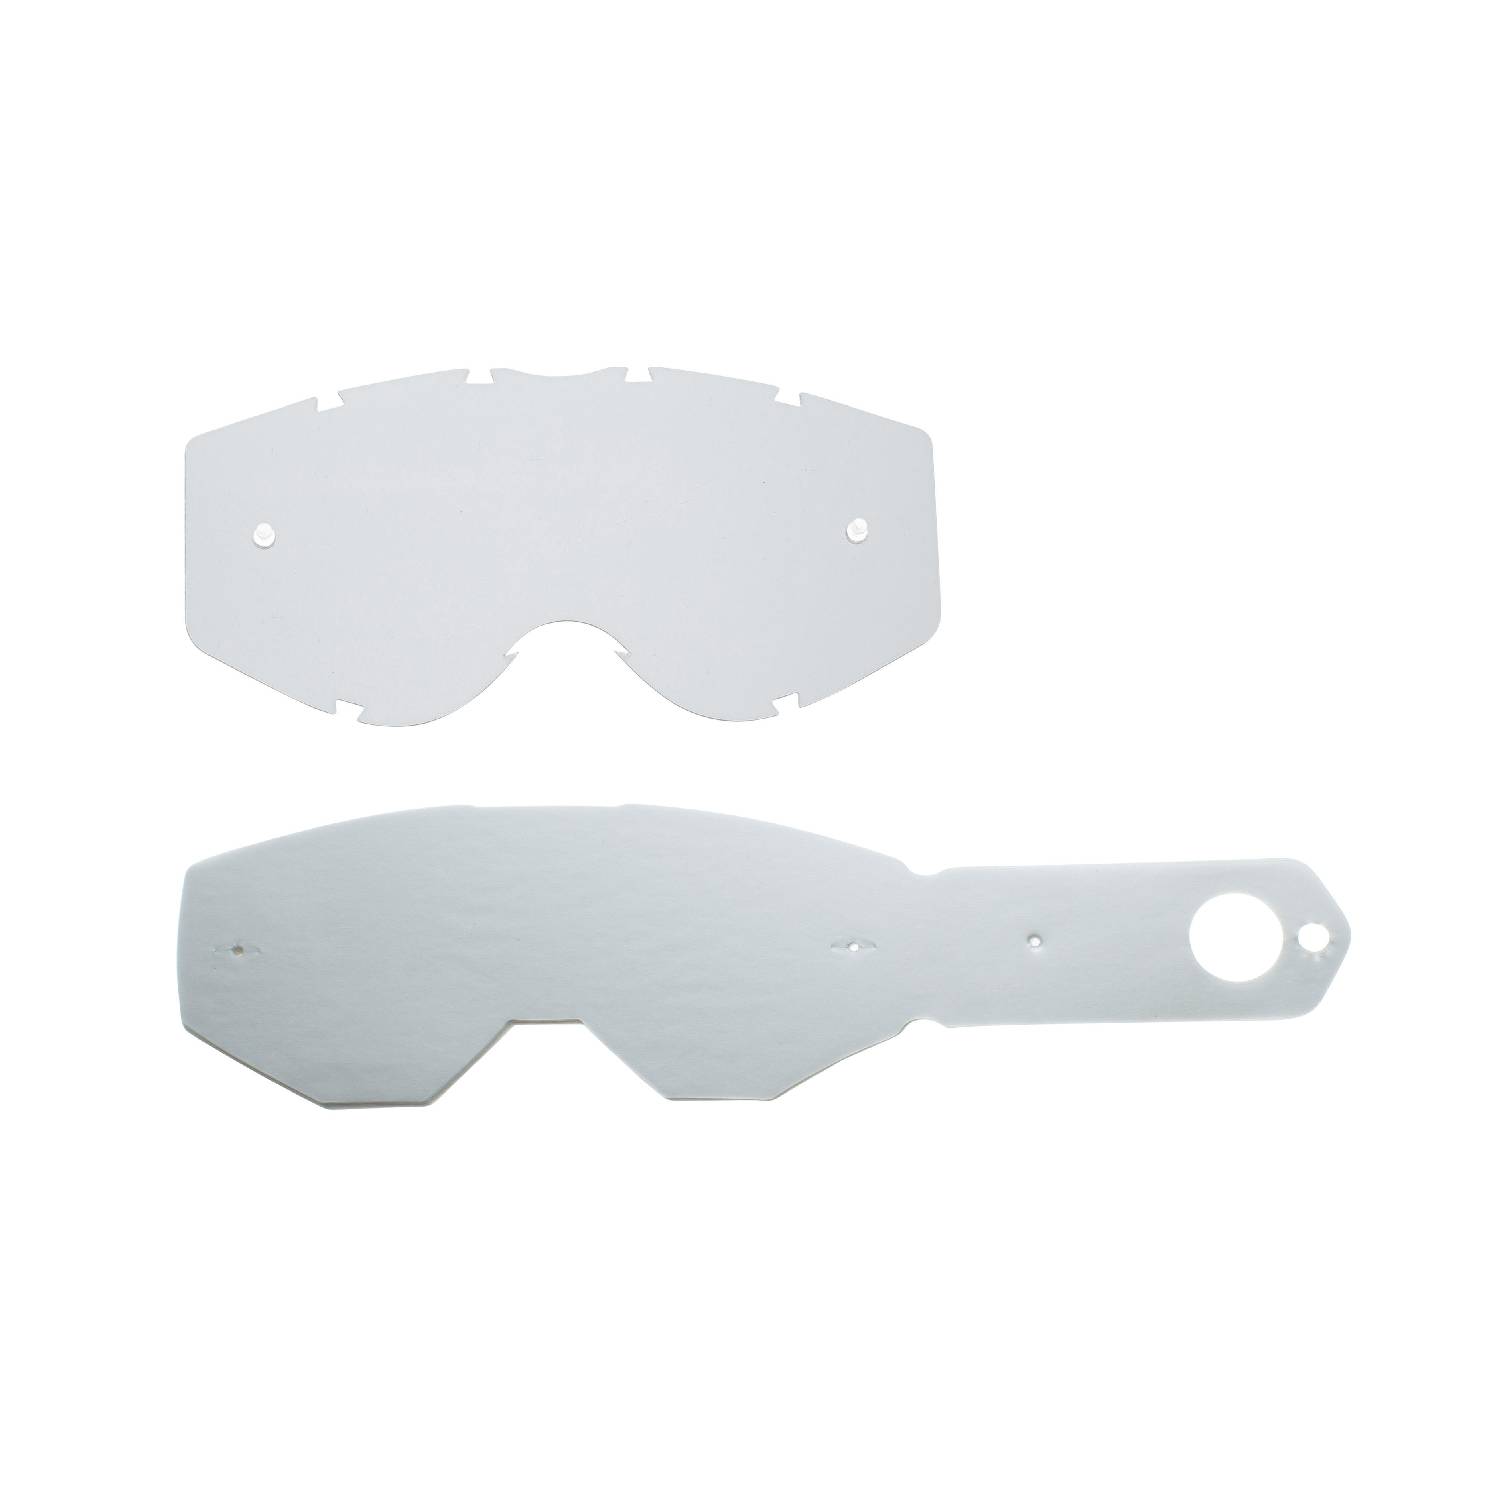 Lente trasparente + 10 Strappi (combo) compatibile per occhiale/maschera Progrip 3303 Vista